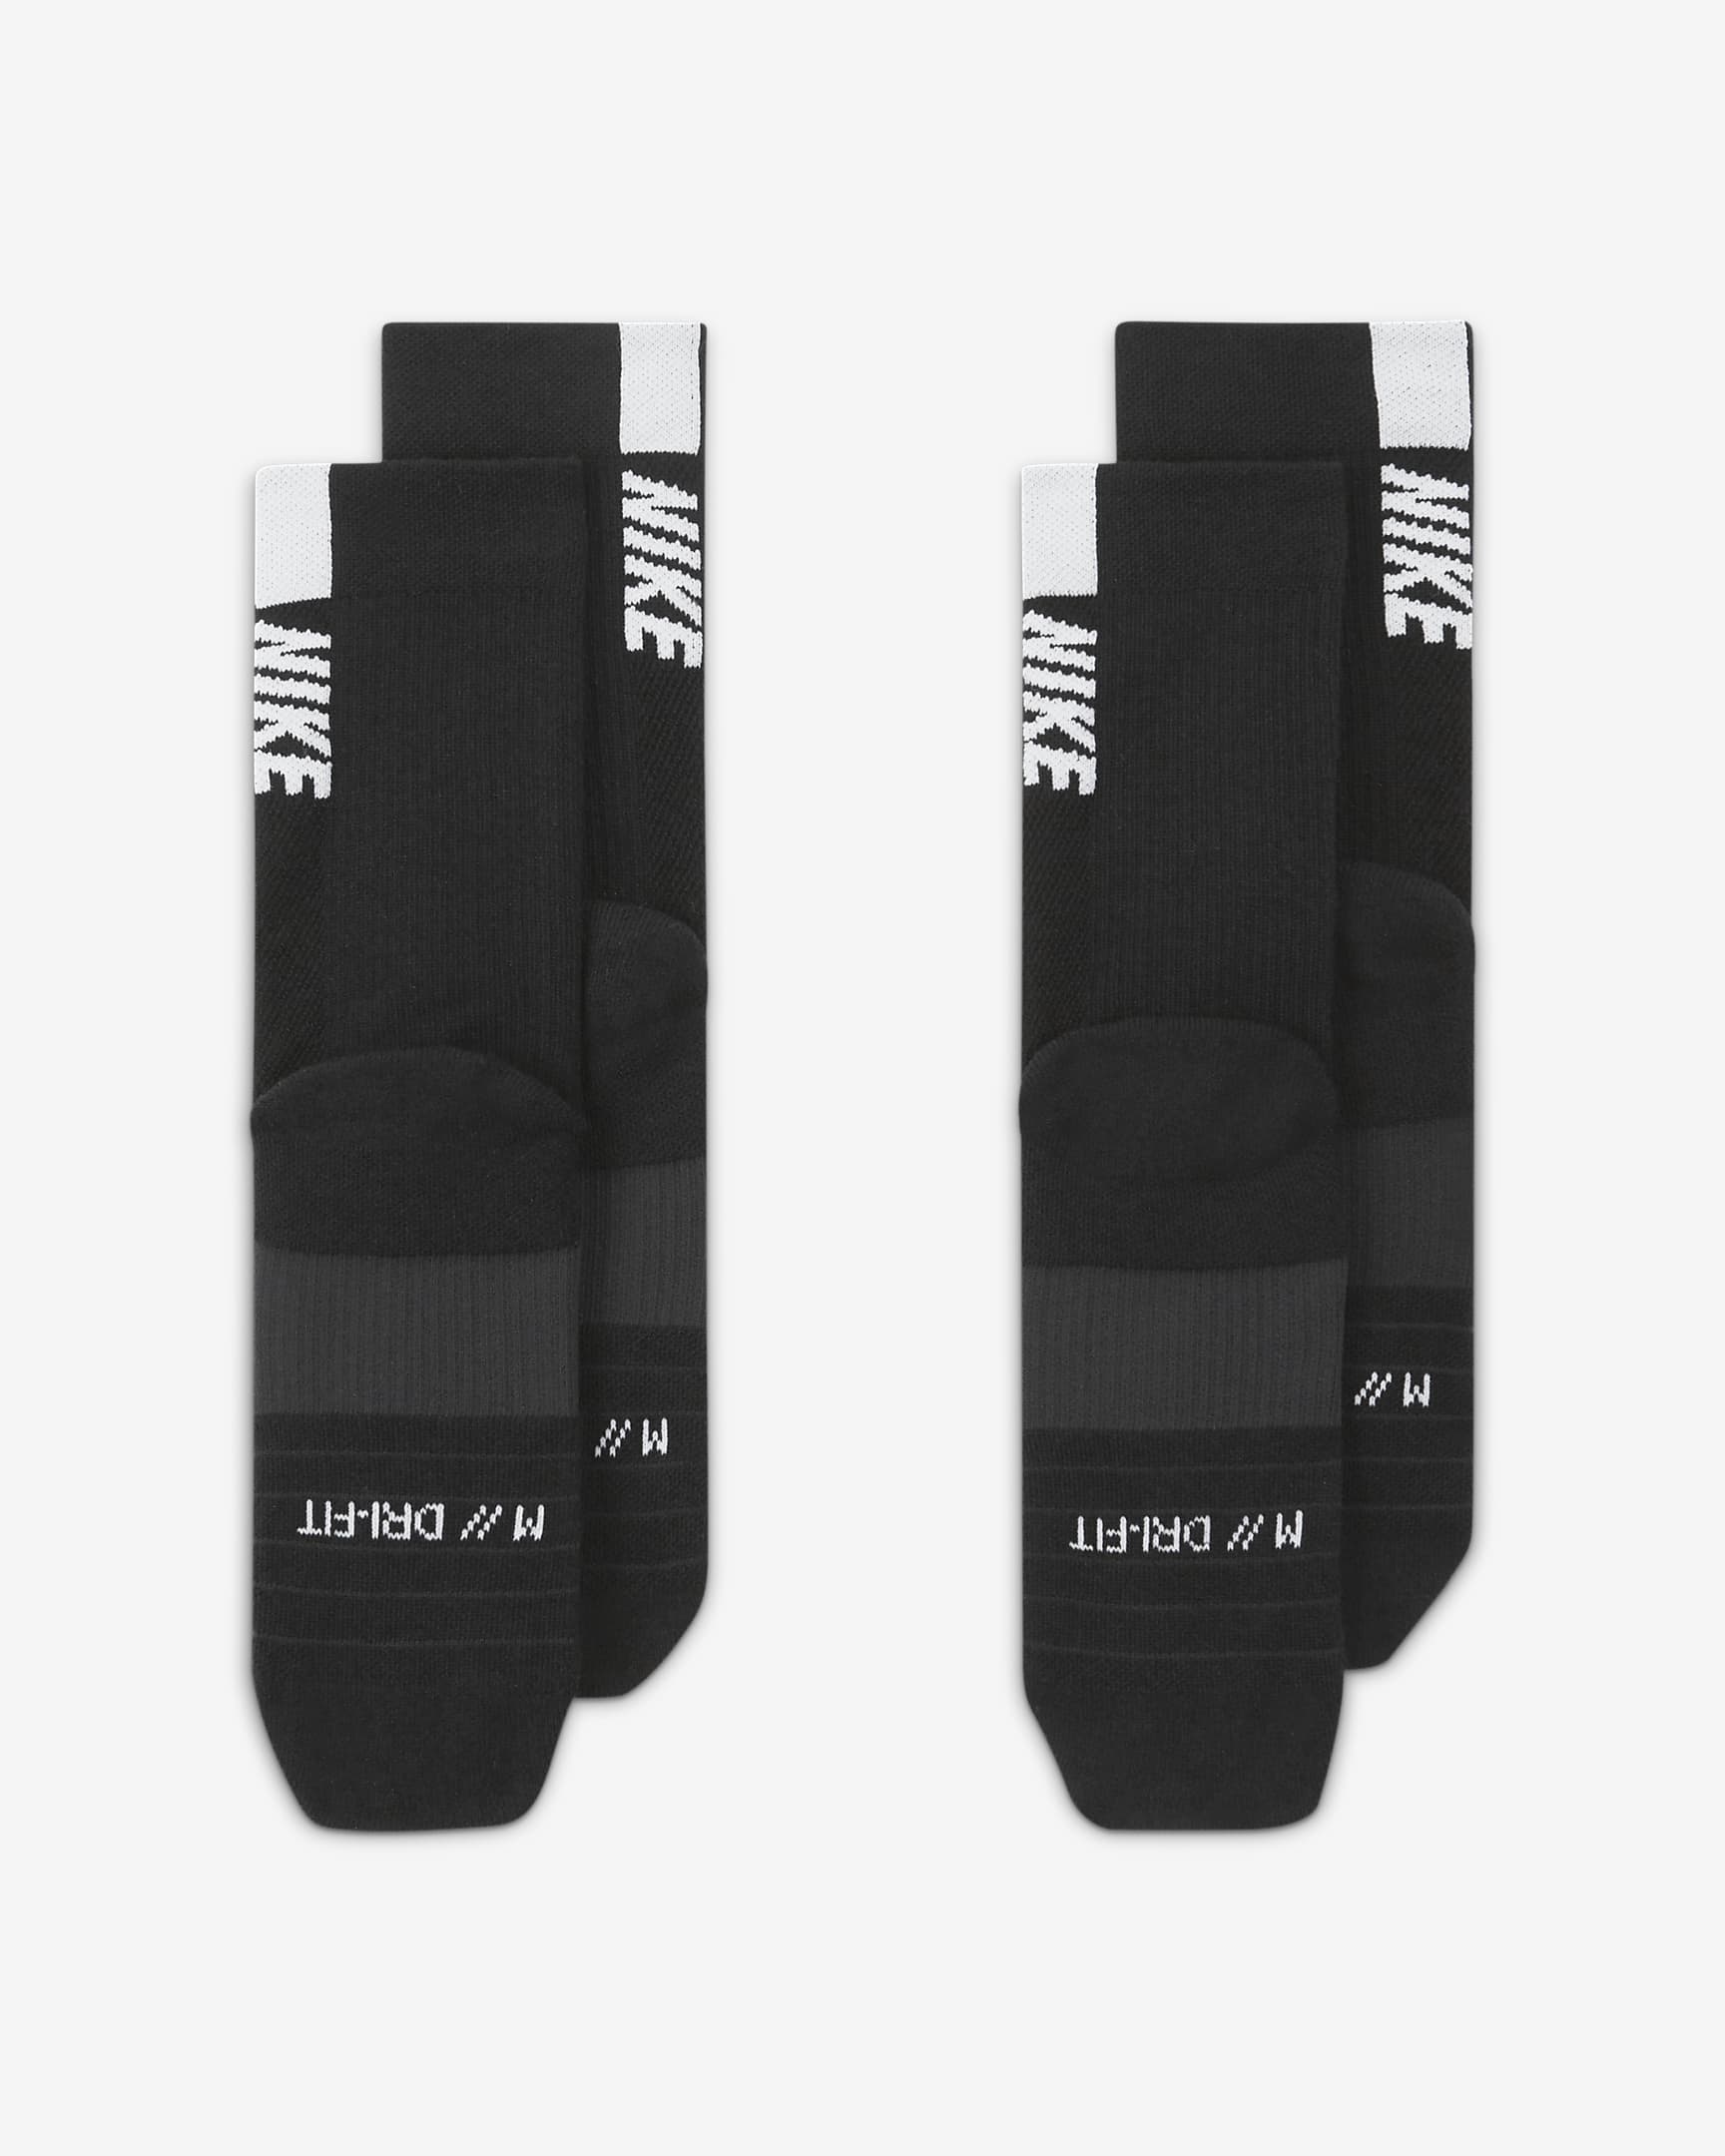 Chaussettes mi-mollet Nike Multiplier (2 paires) - Noir/Blanc